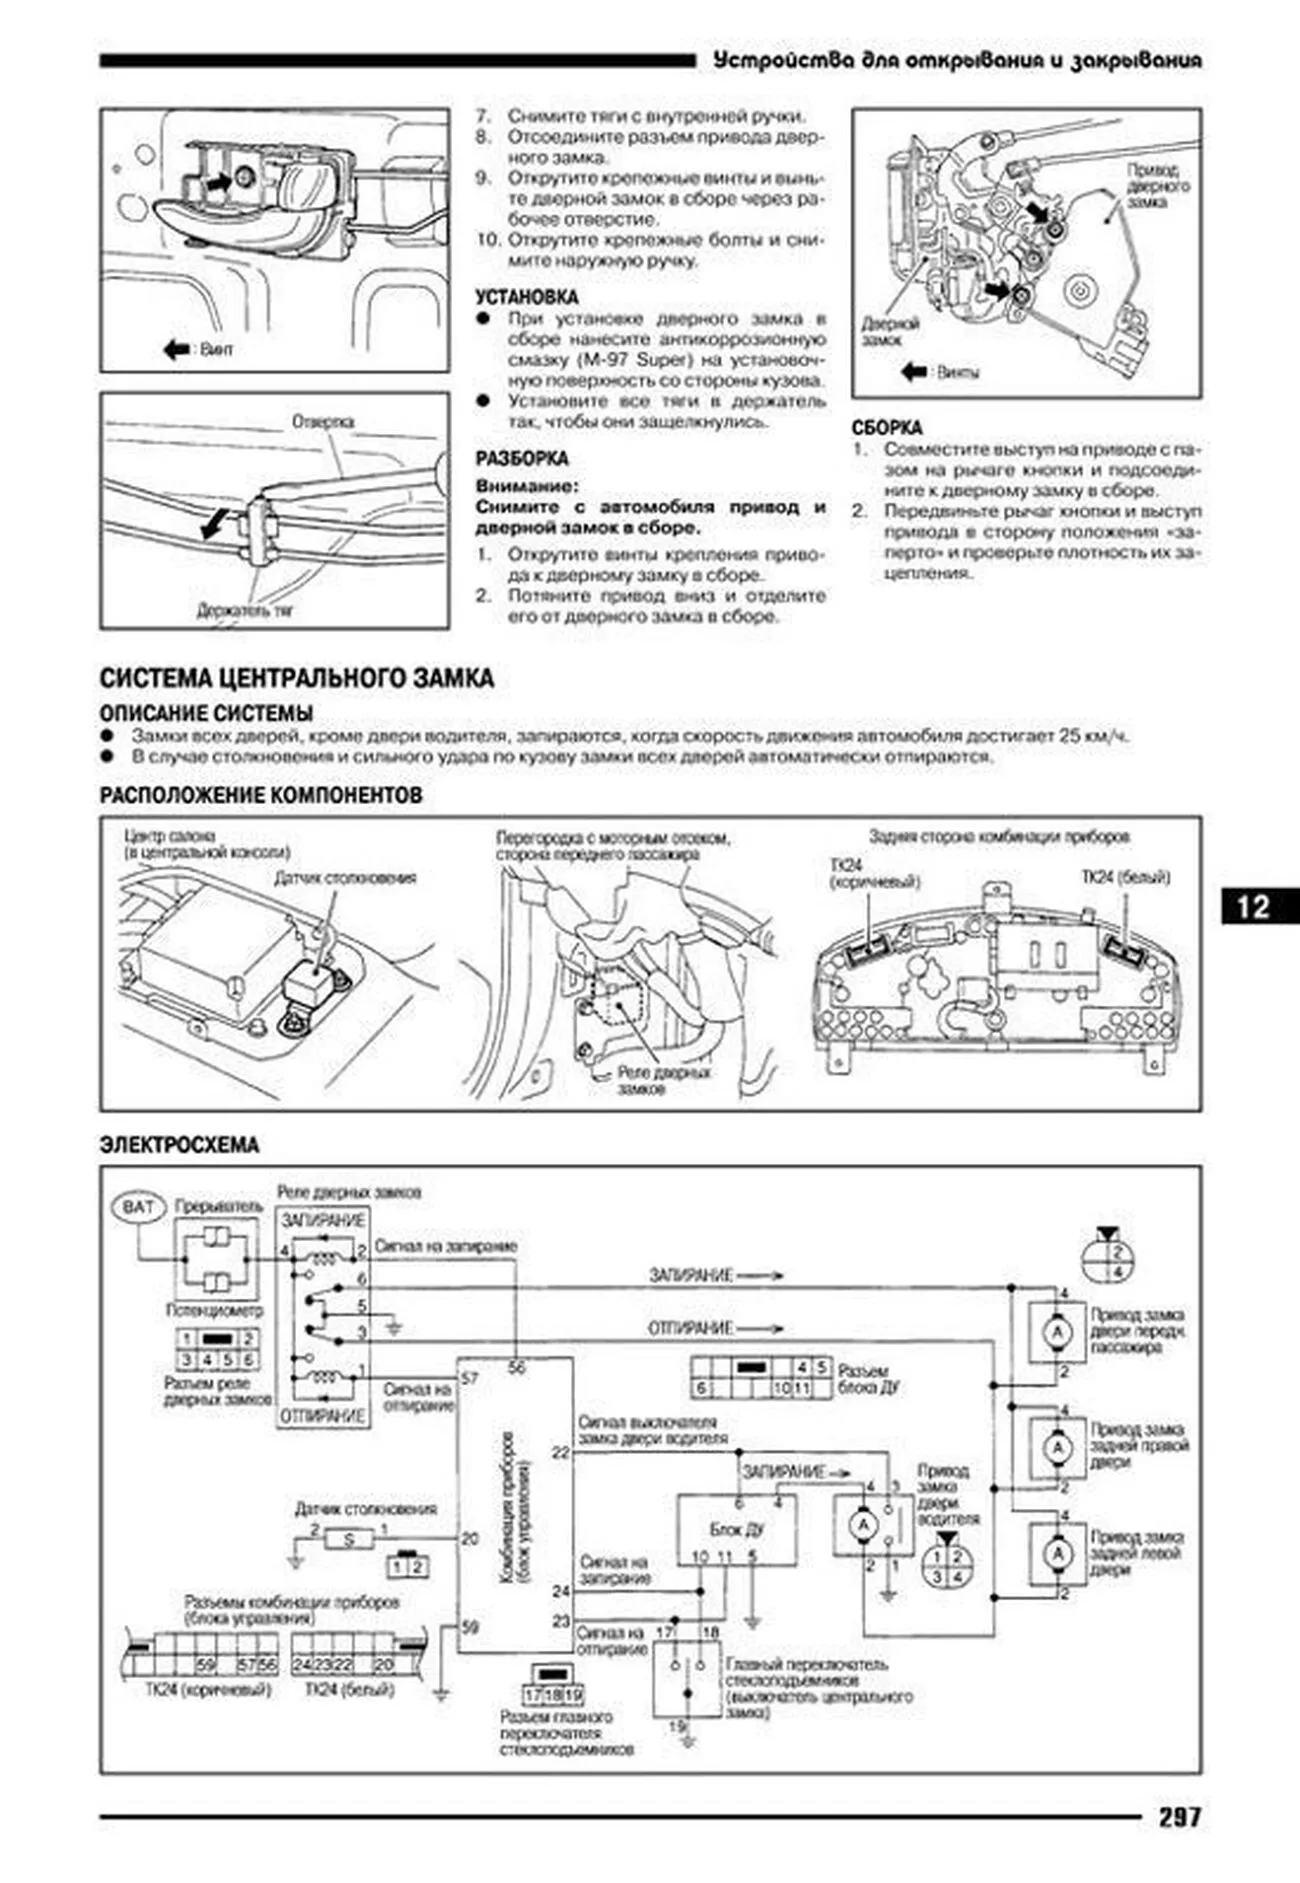 Книга: NISSAN CEFIRO A33 (б) 1998-2003 г.в., рем., экспл., то | Автонавигатор